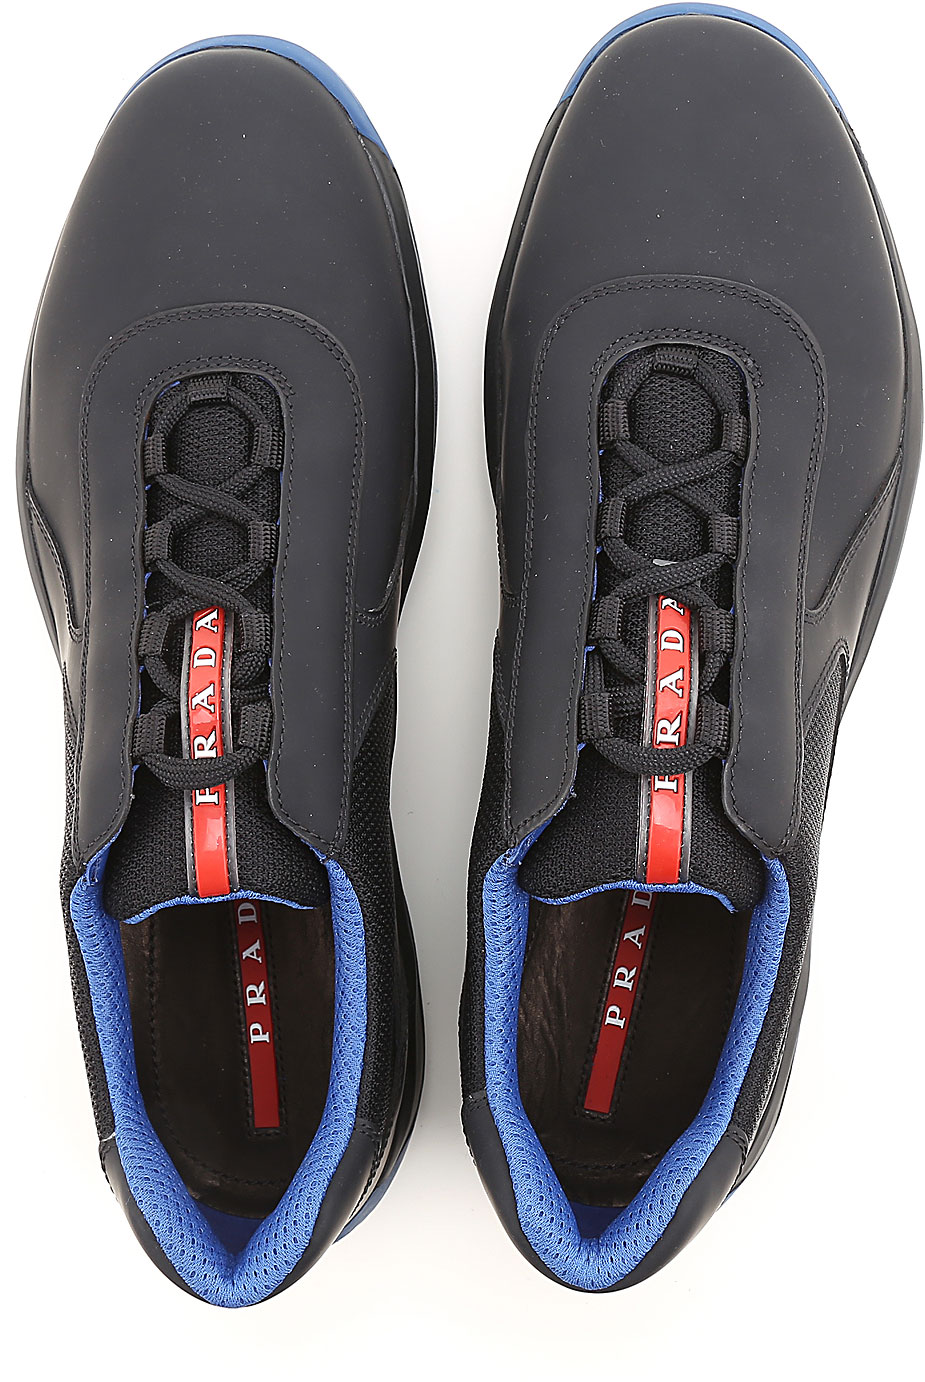 Mens Shoes Prada, Style code: 4e2905-101g-f011e